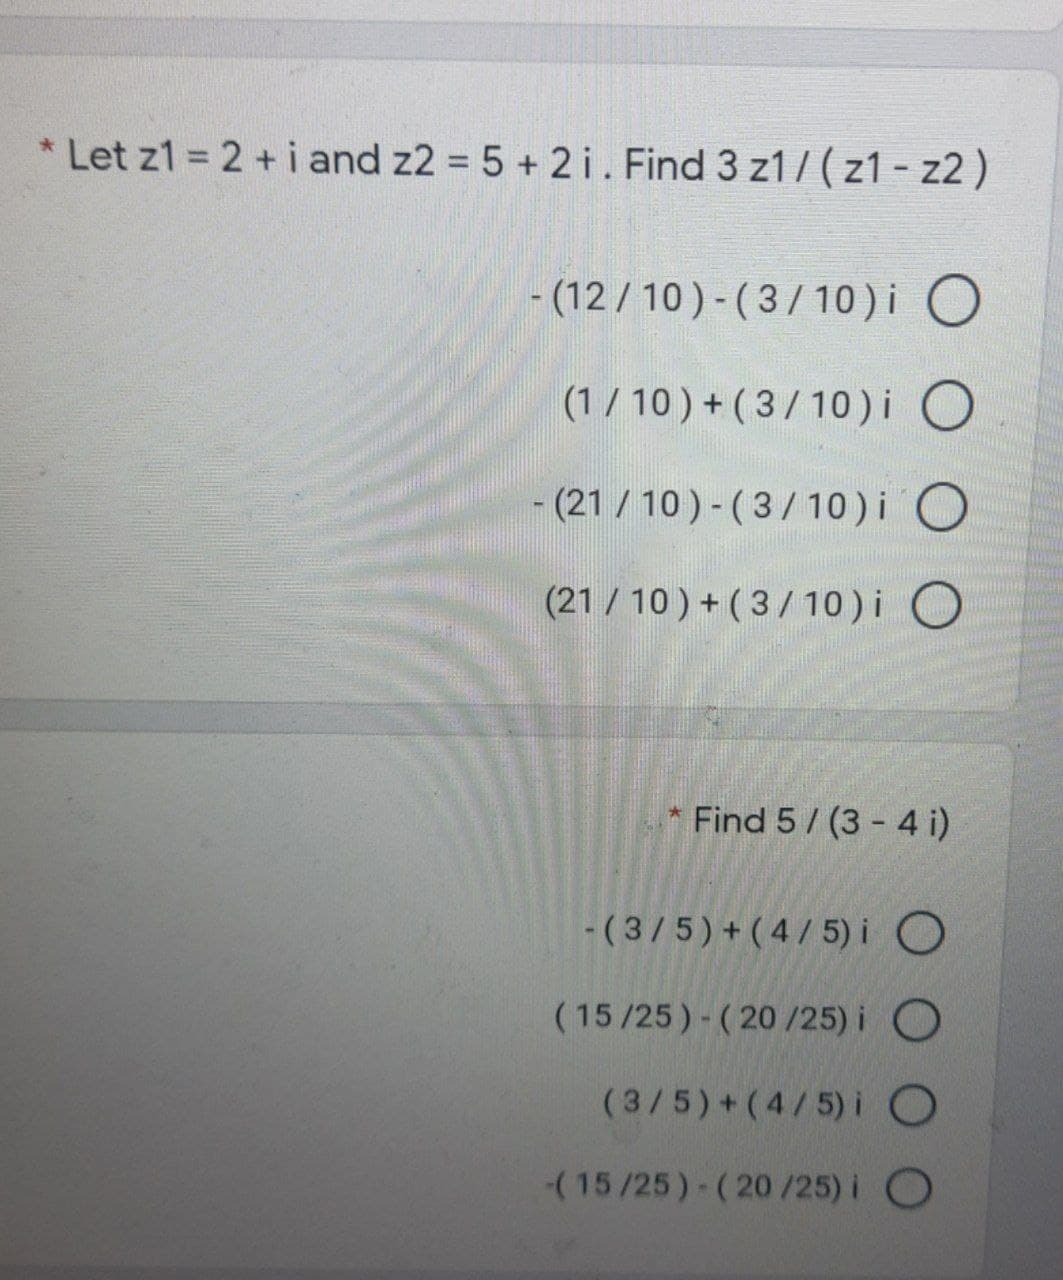 * Let z1 = 2 + i and z2 = 5 + 2 i. Find 3 z1 7(z1 - z2 )
- (12 / 10) - ( 3/ 10)i O
(1/ 10 ) + ( 3/10)i O
- (21 / 10 ) - (3/10) i O
(21 /10 ) + (3/10)i O
Find 5/ (3 - 4 i)
-(3/5)+(4/ 5) i O
(15/25)- (20 /25) i O
(3/5)+(4/5) i
(15/25)-(20/25) i O
